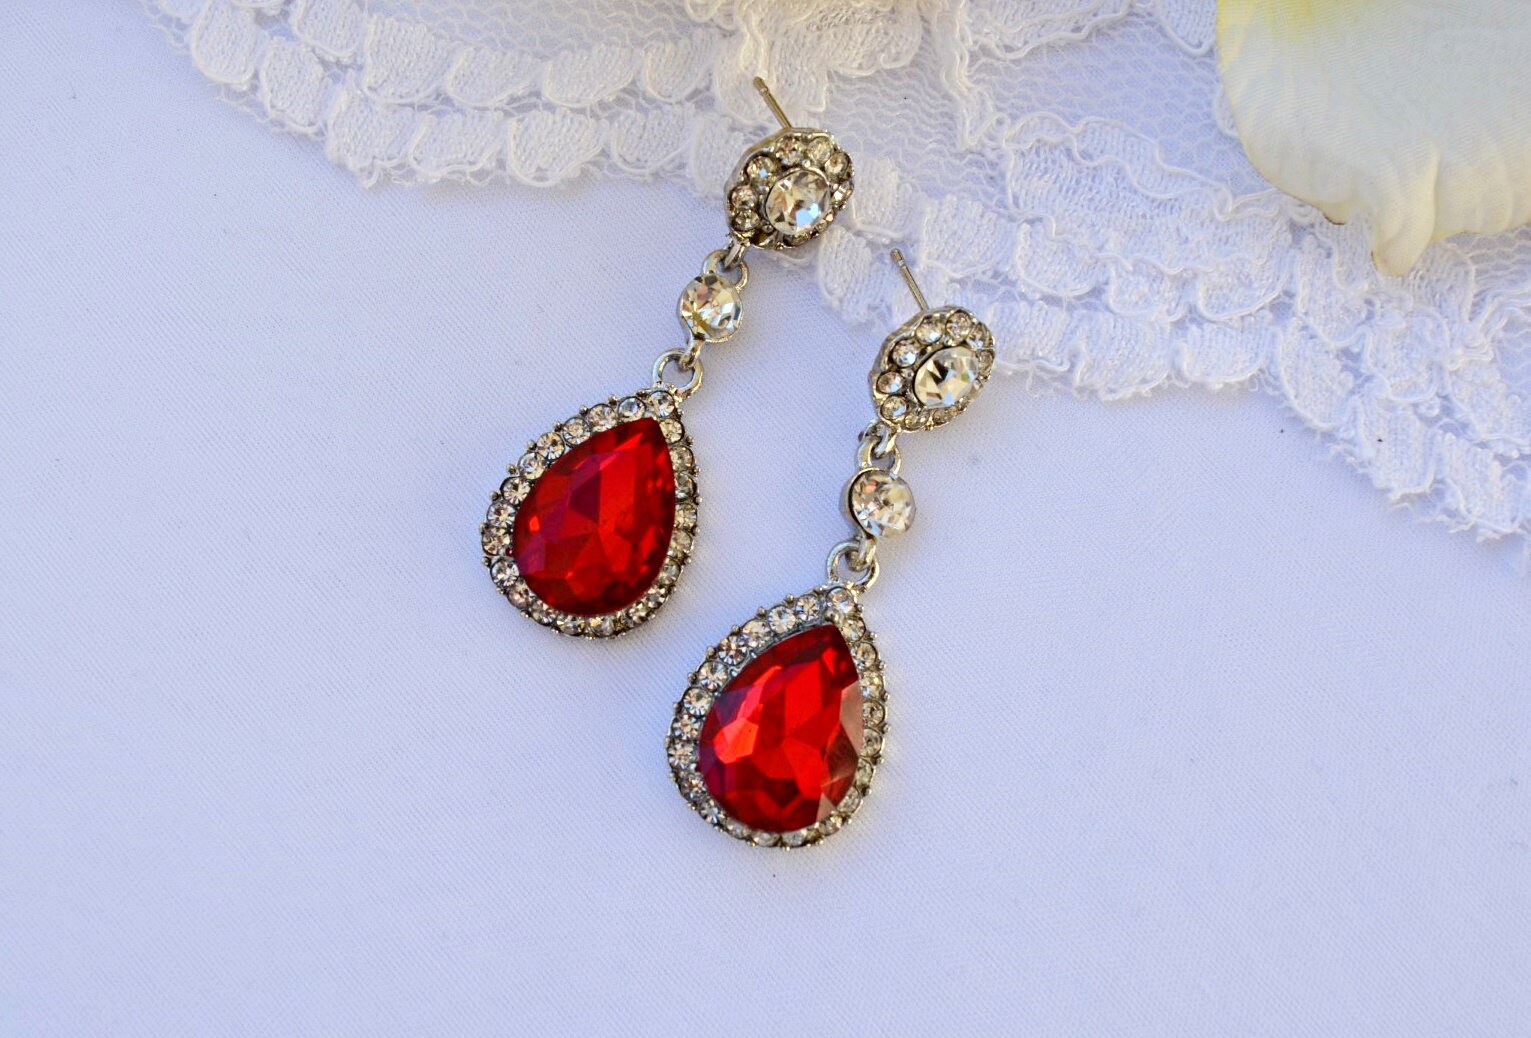 Wedding Earrings Red for Brides Bridal Crystal Rhinestone Earrings, Red ...